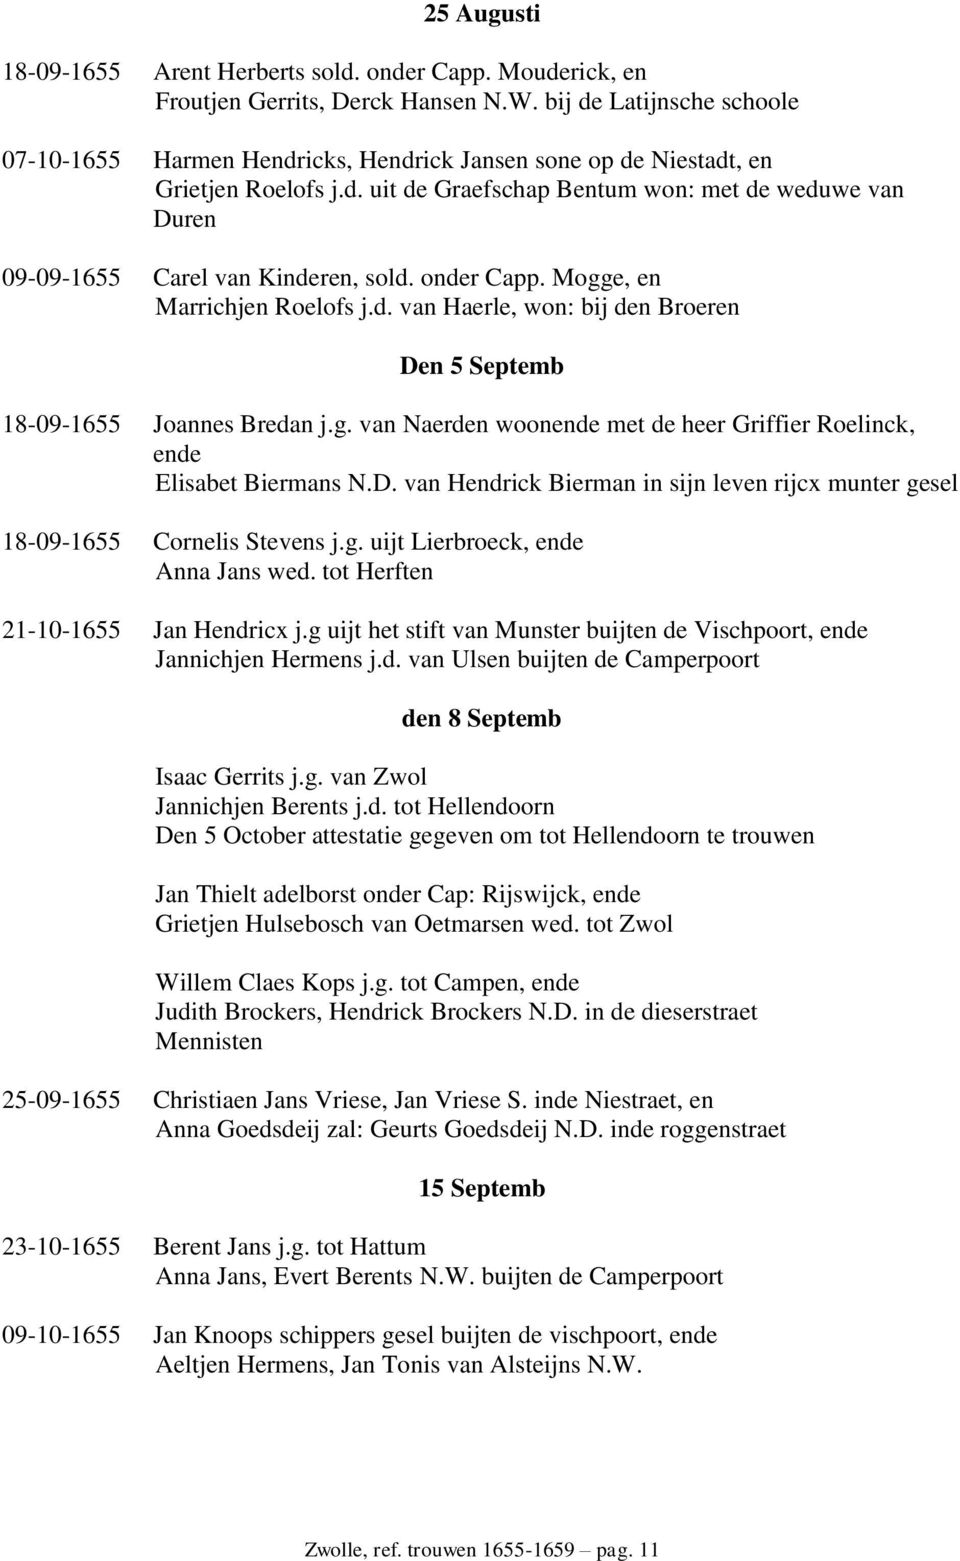 onder Capp. Mogge, en Marrichjen Roelofs j.d. van Haerle, won: bij den Broeren Den 5 Septemb 18-09-1655 Joannes Bredan j.g. van Naerden woonende met de heer Griffier Roelinck, ende Elisabet Biermans N.